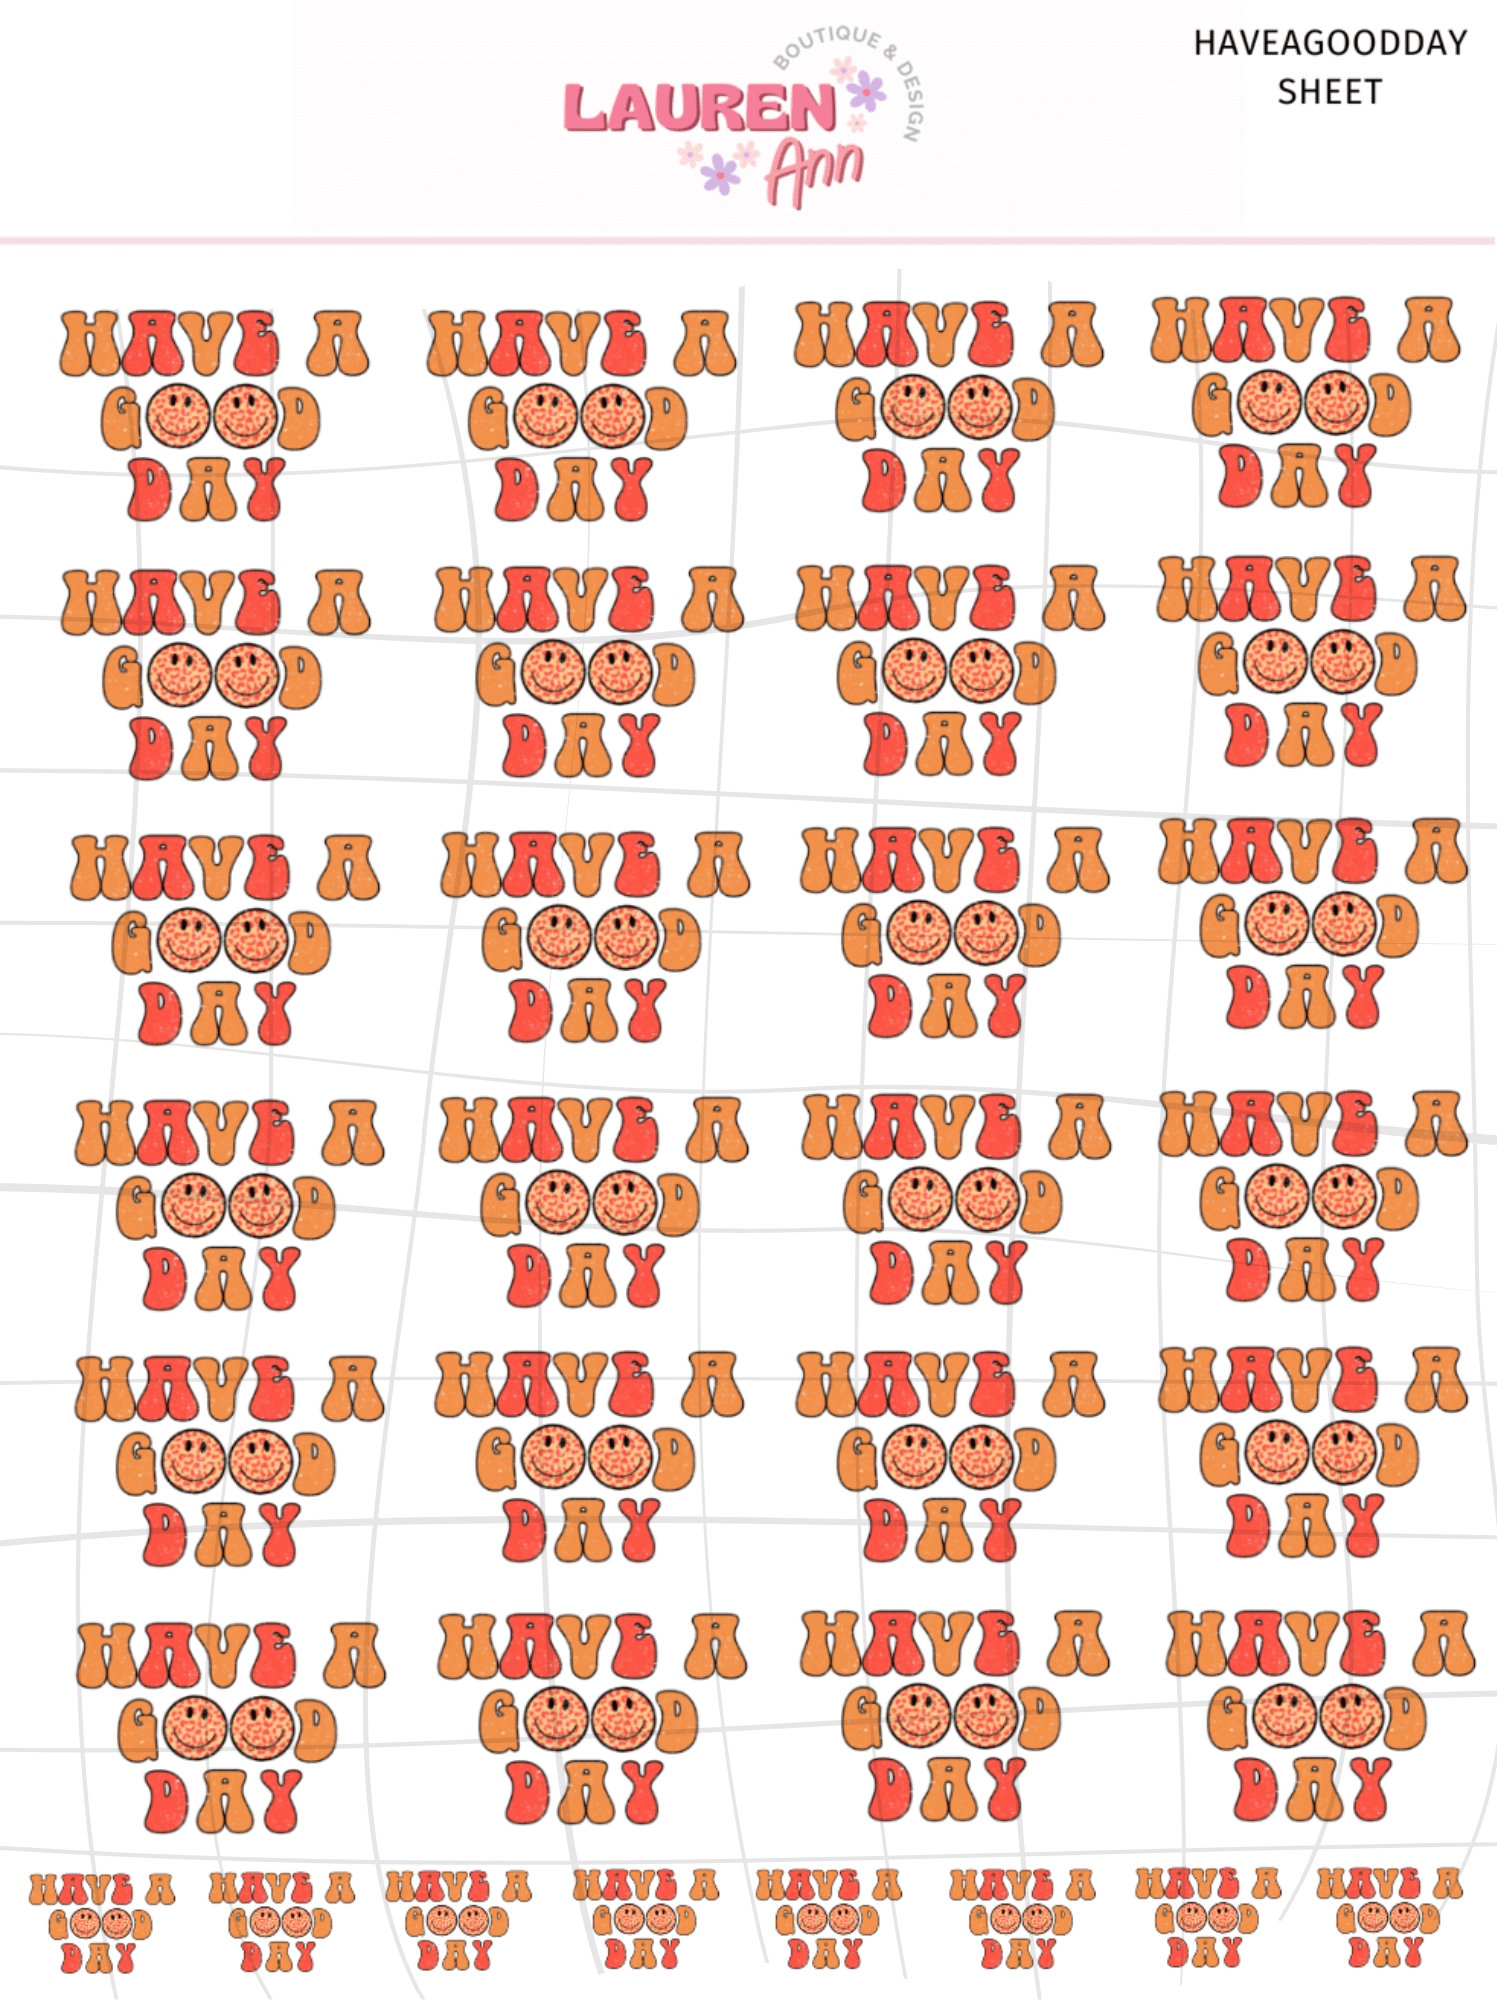 Digital Download Have A Good Day Sticker Sheet - Designs by Lauren Ann